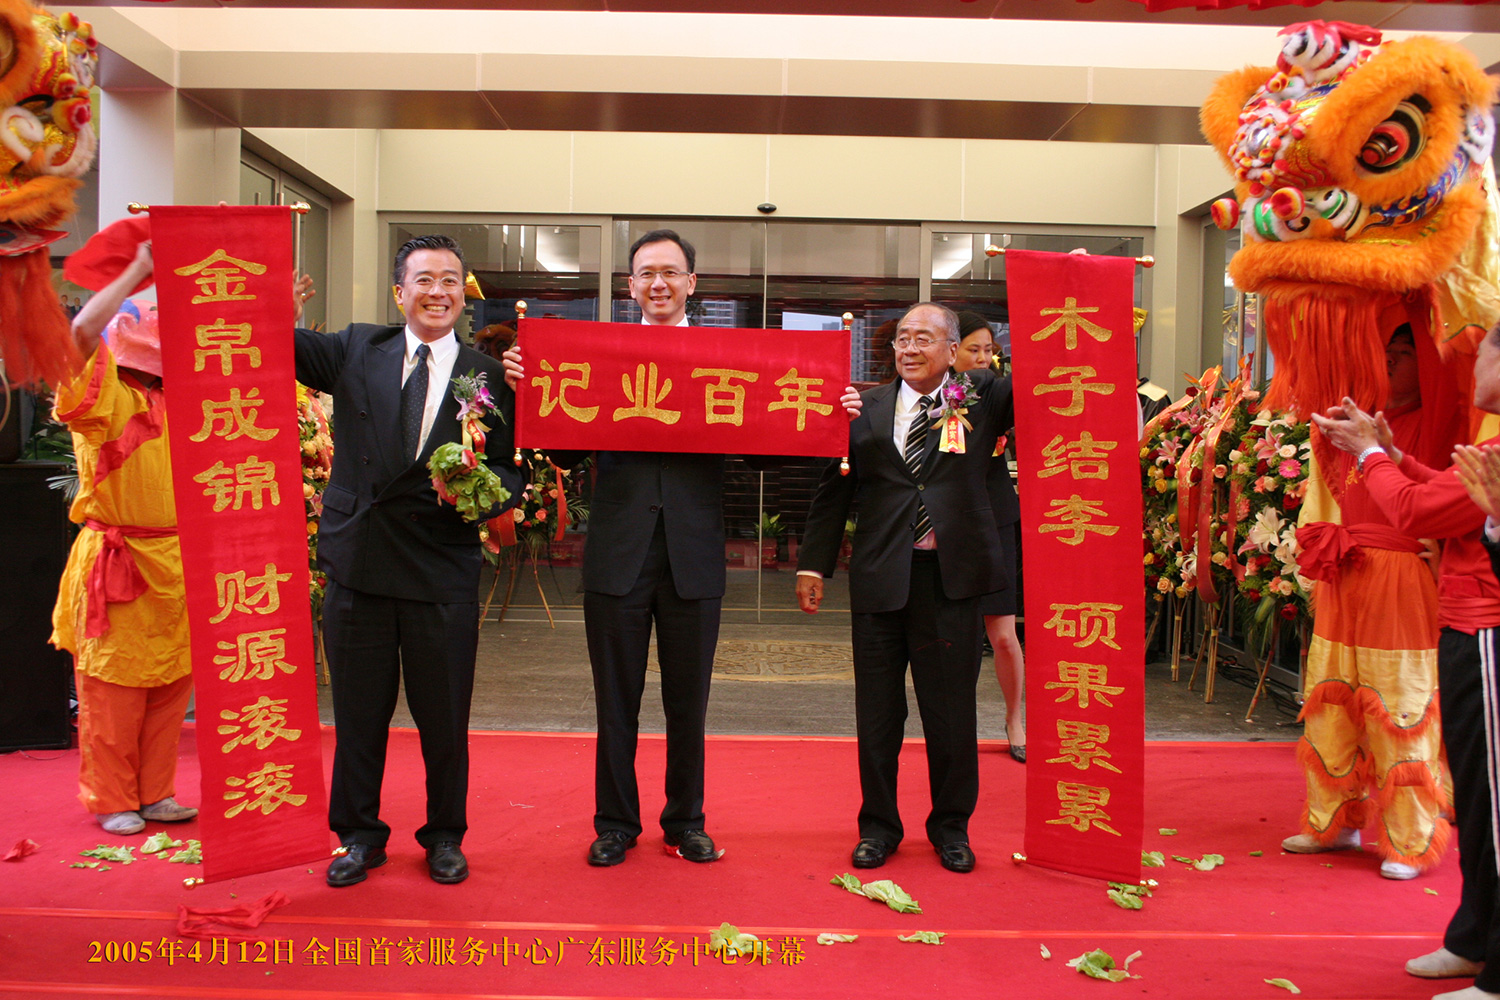 2005.04.12全国第一家无限极服务中心正式在广州成立。迄今为止企业在全国拥有30家无限极服务中心